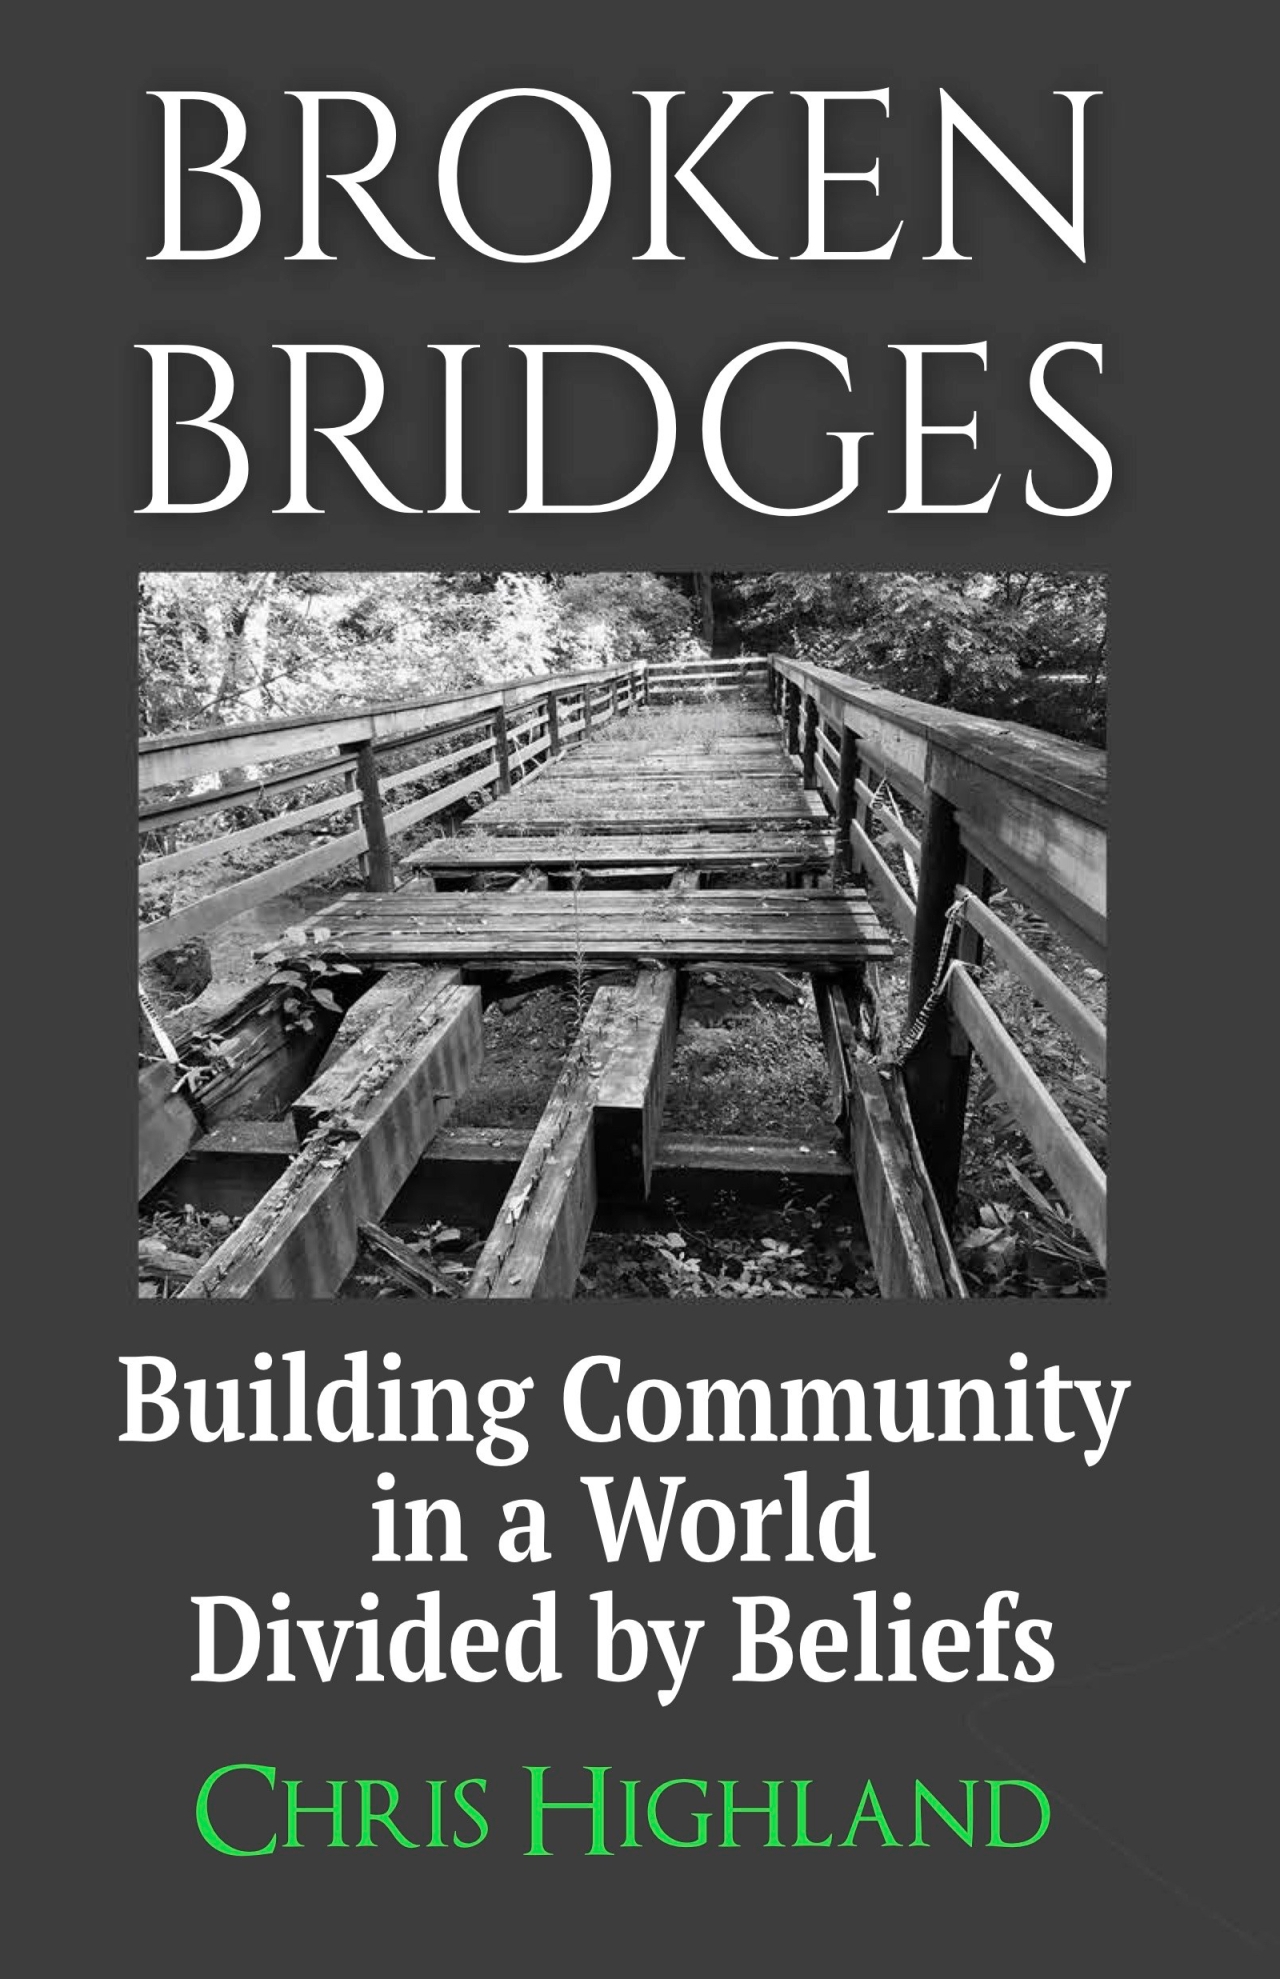 Great Review of Broken Bridges!